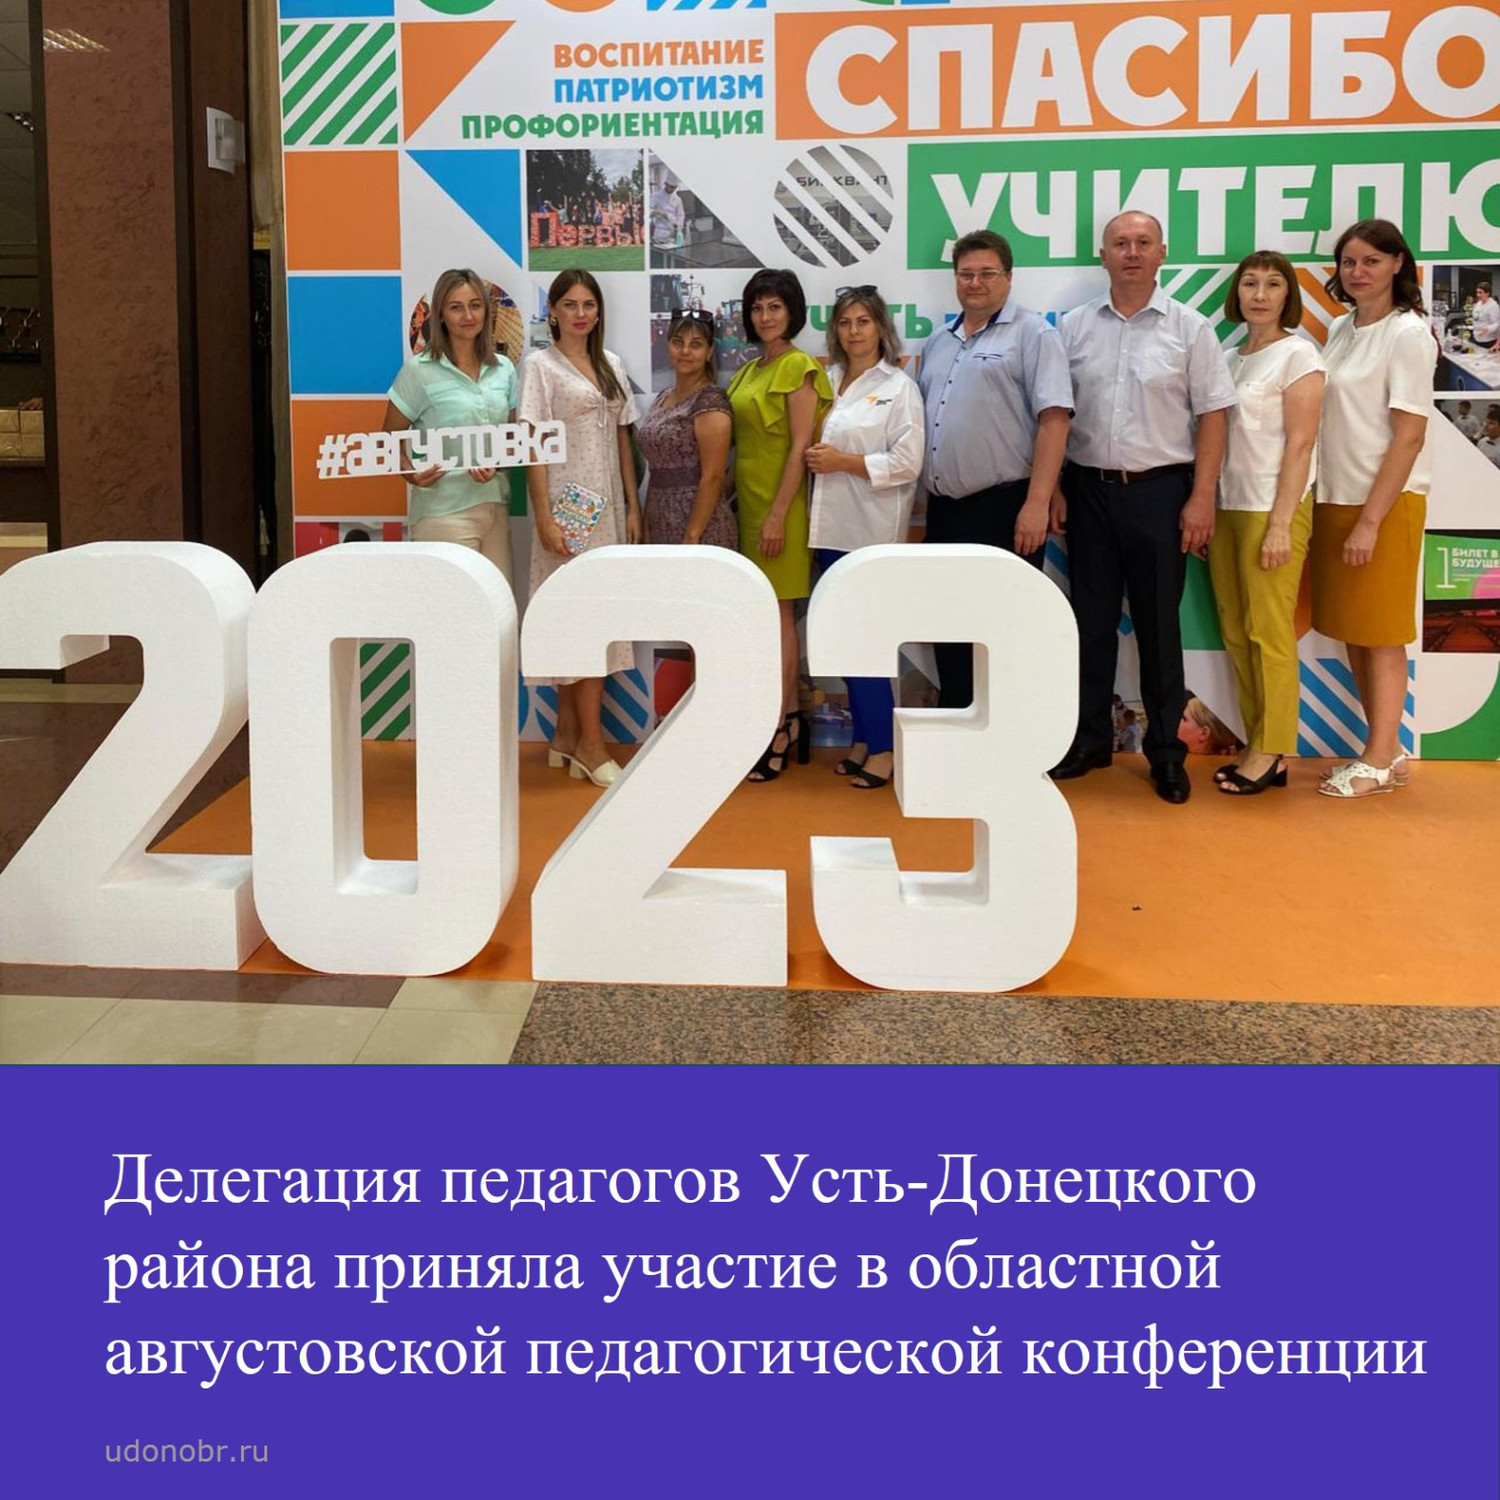 Делегация педагогов Усть-Донецкого района приняла участие в областной августовской педагогической конференции